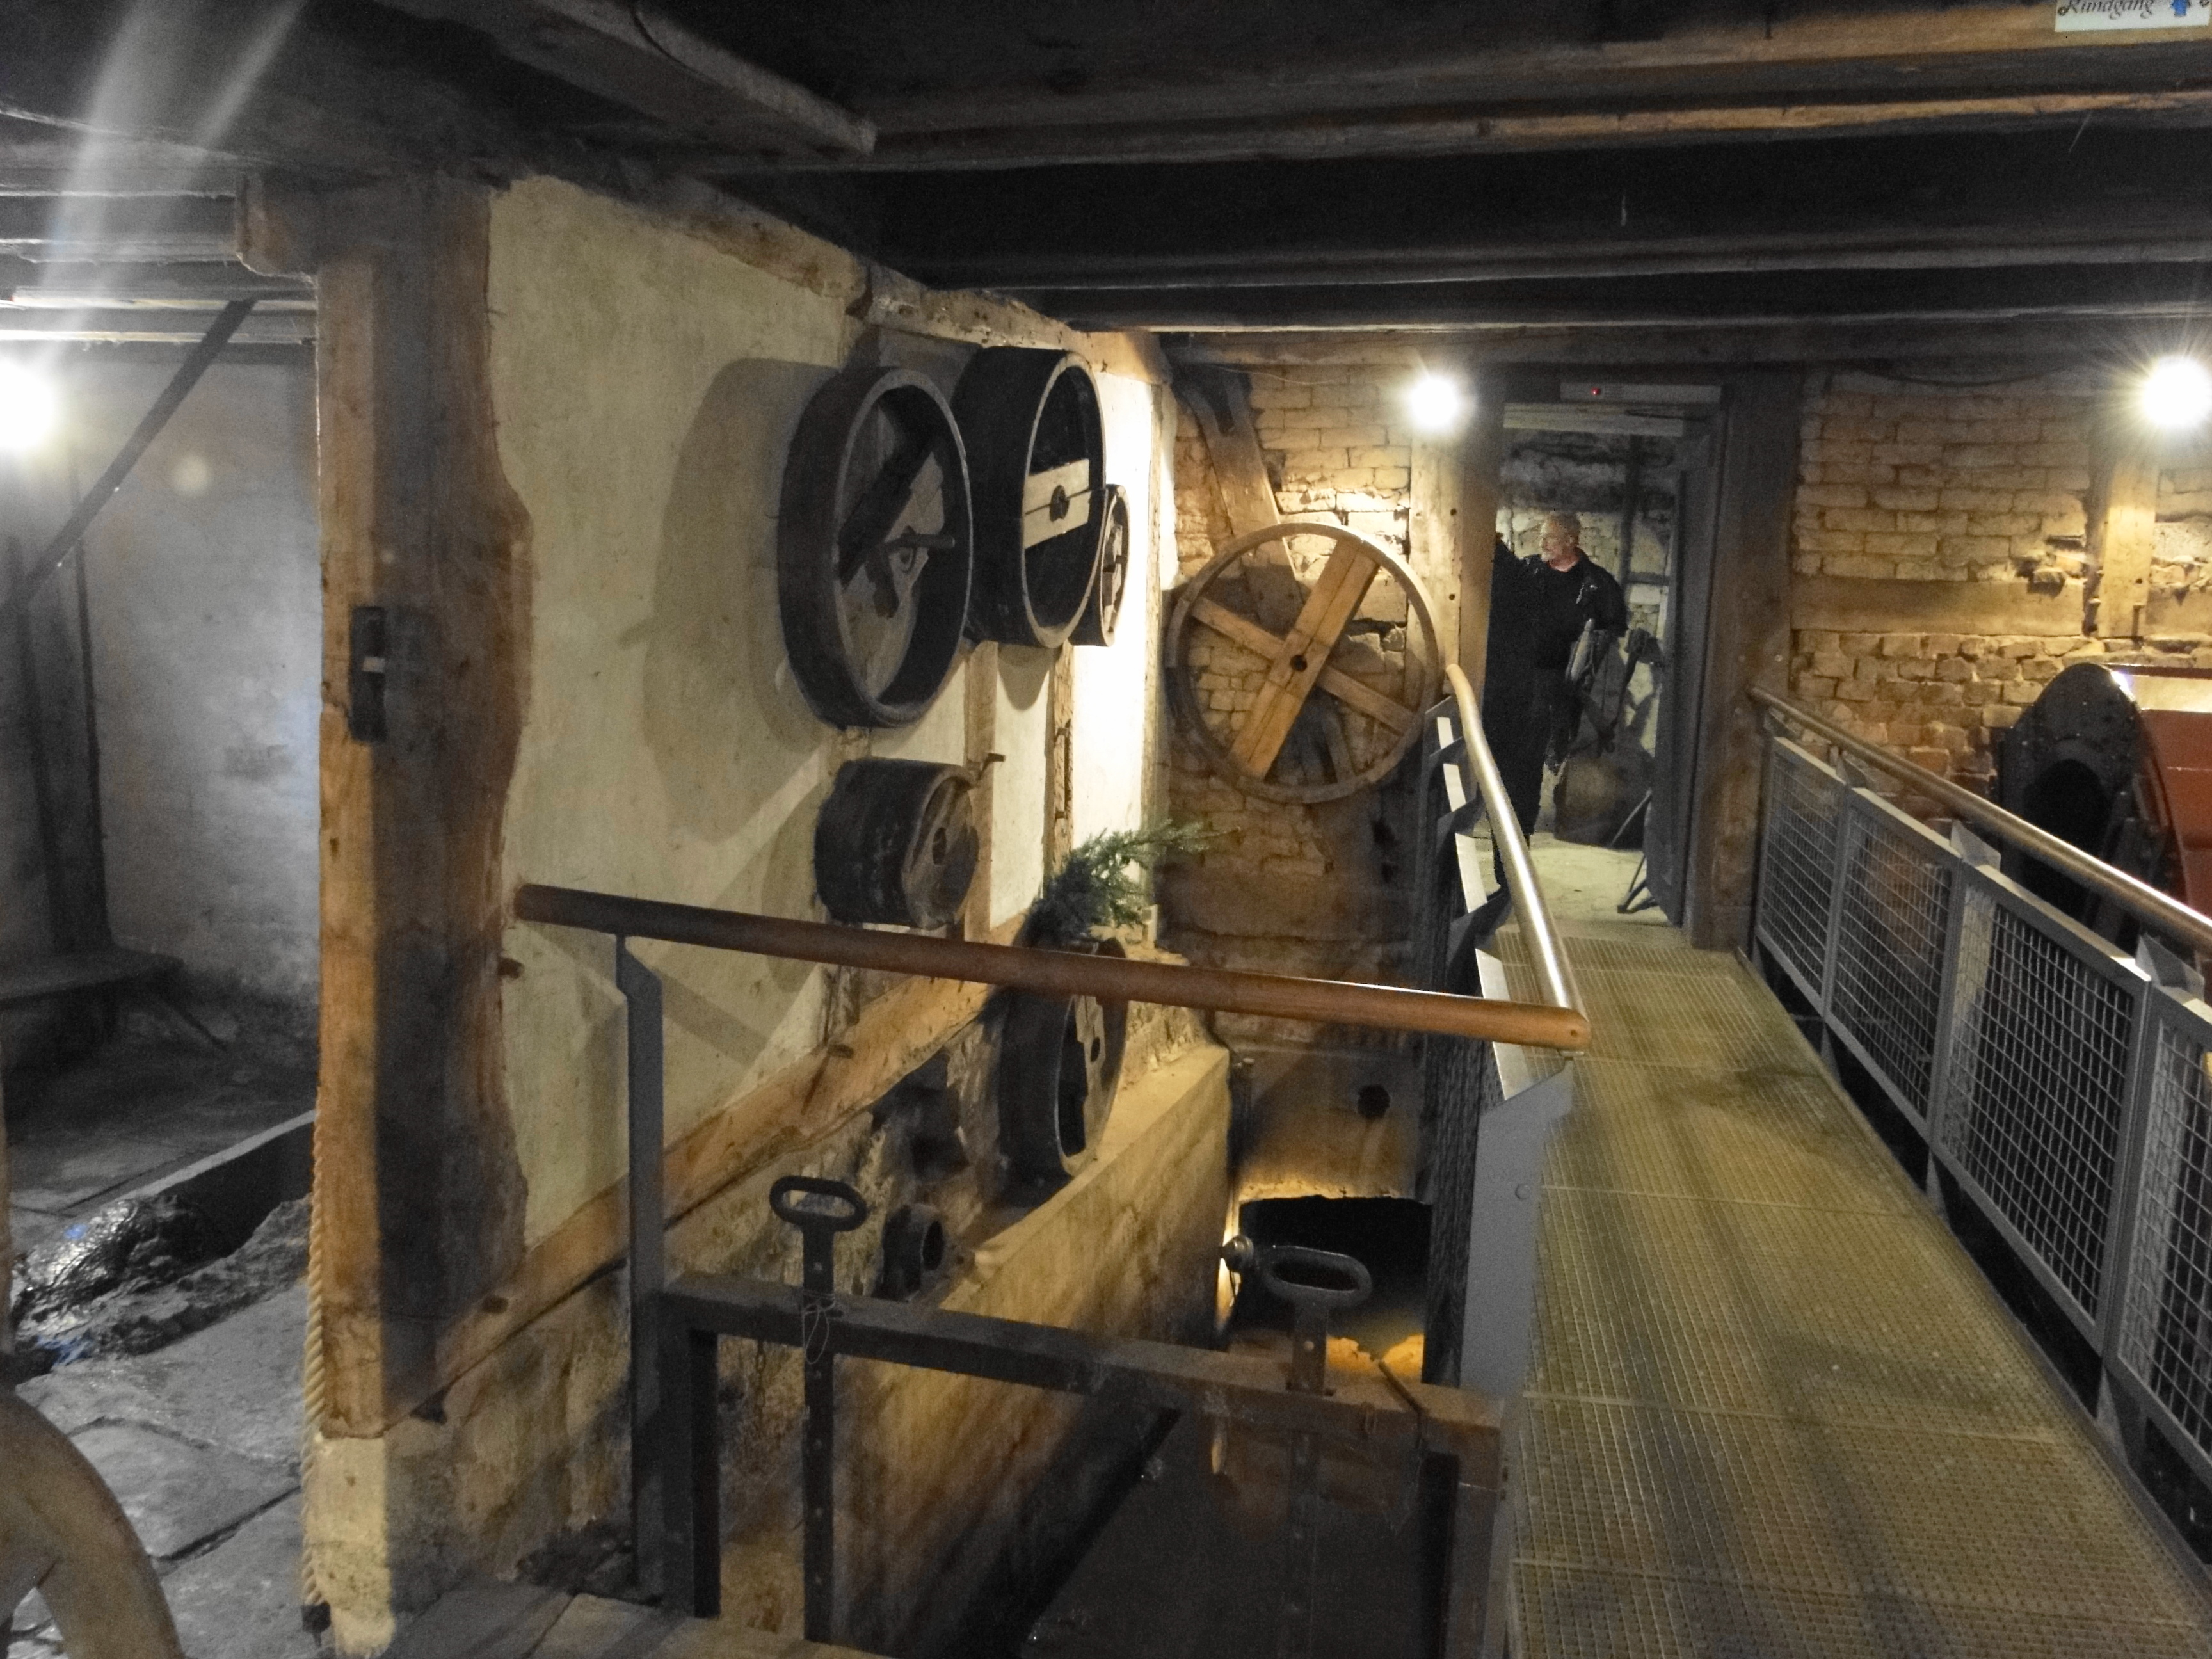 Historisches Technikmuseum Blankschmiede Neimke in Dassel, Durchgang zum Wasserrad